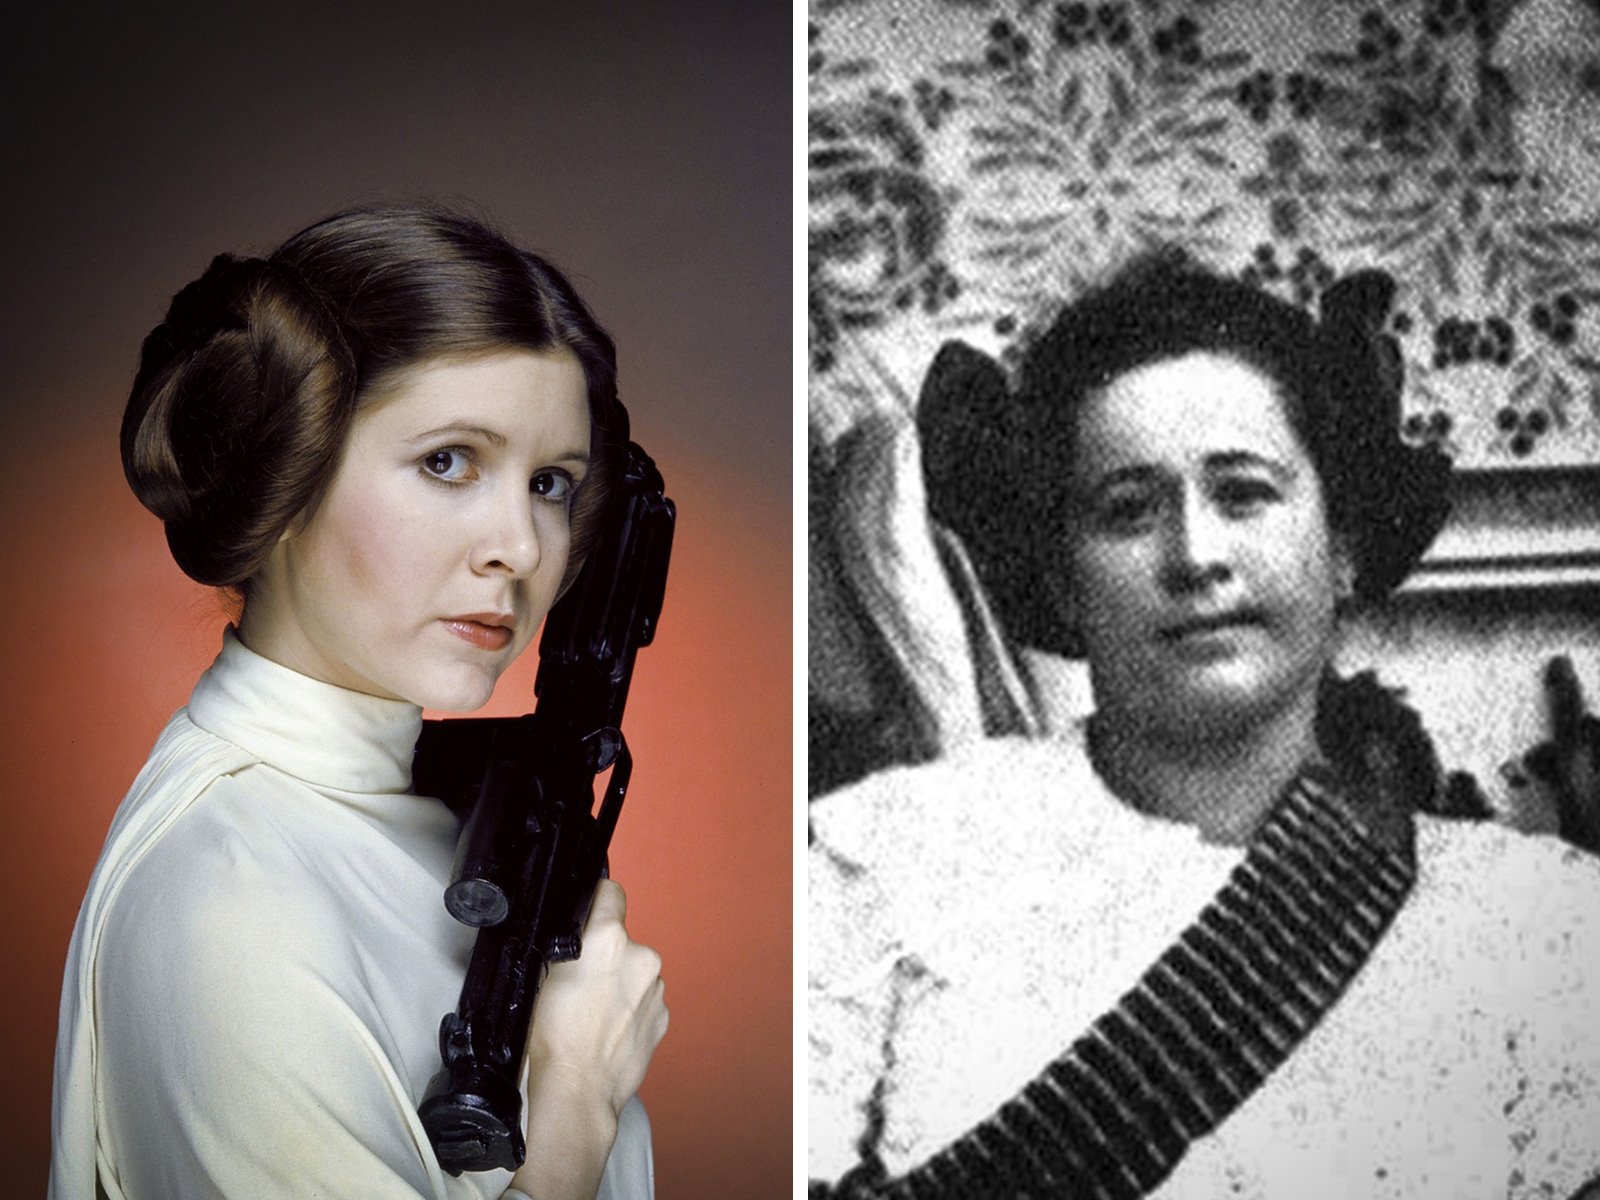 El peinado de la princesa Leia fue inspirado por las revolucionarias  mexicanas  Regionvalles